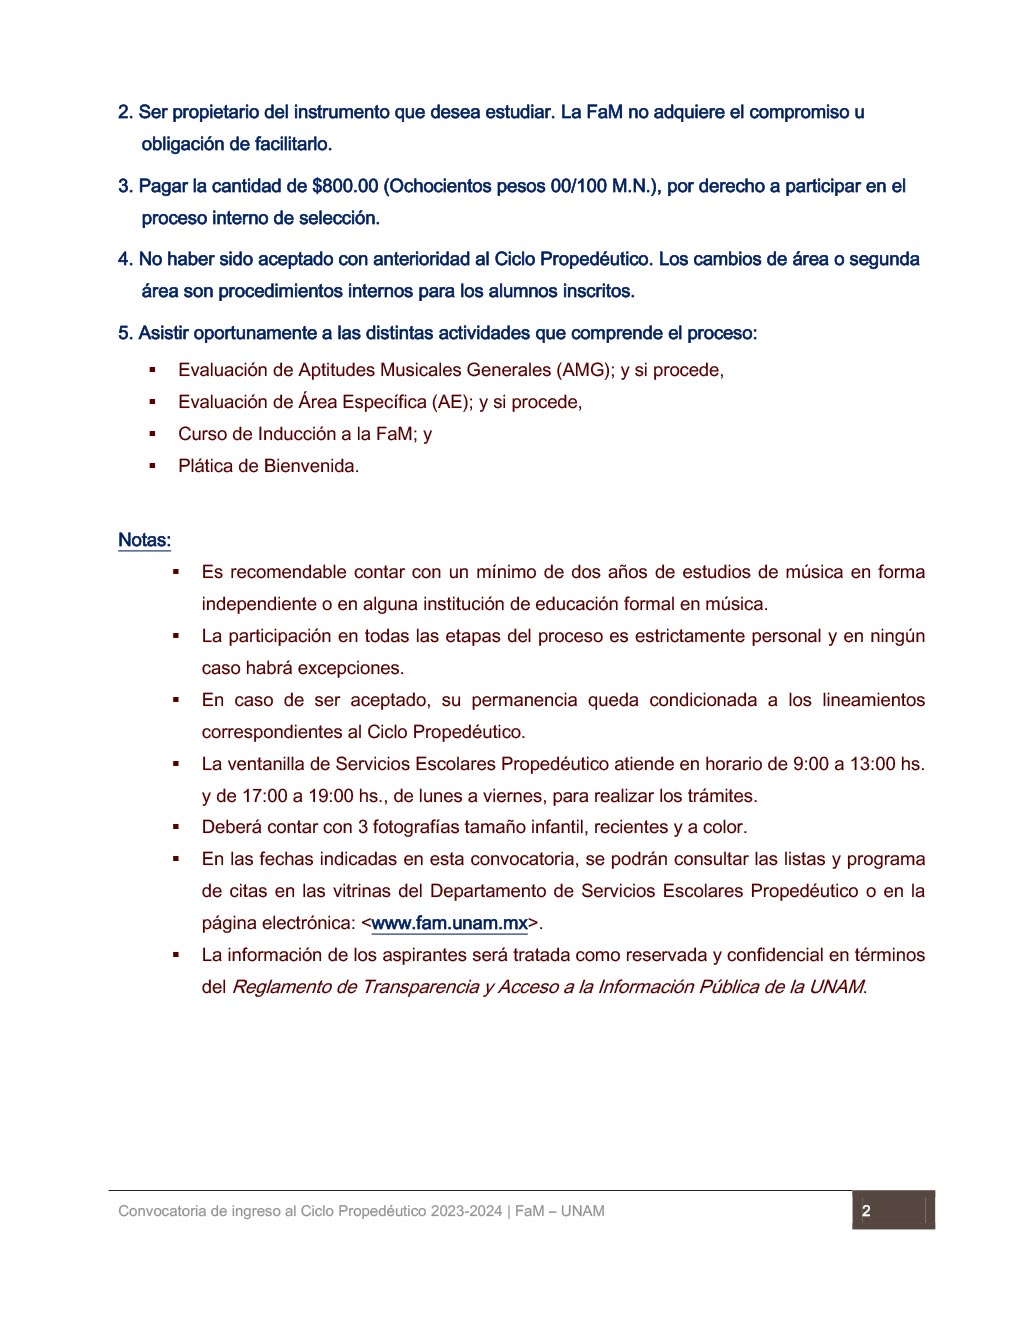 Convocatoria FaM UNAM 2023 Ingreso a Propedéutico